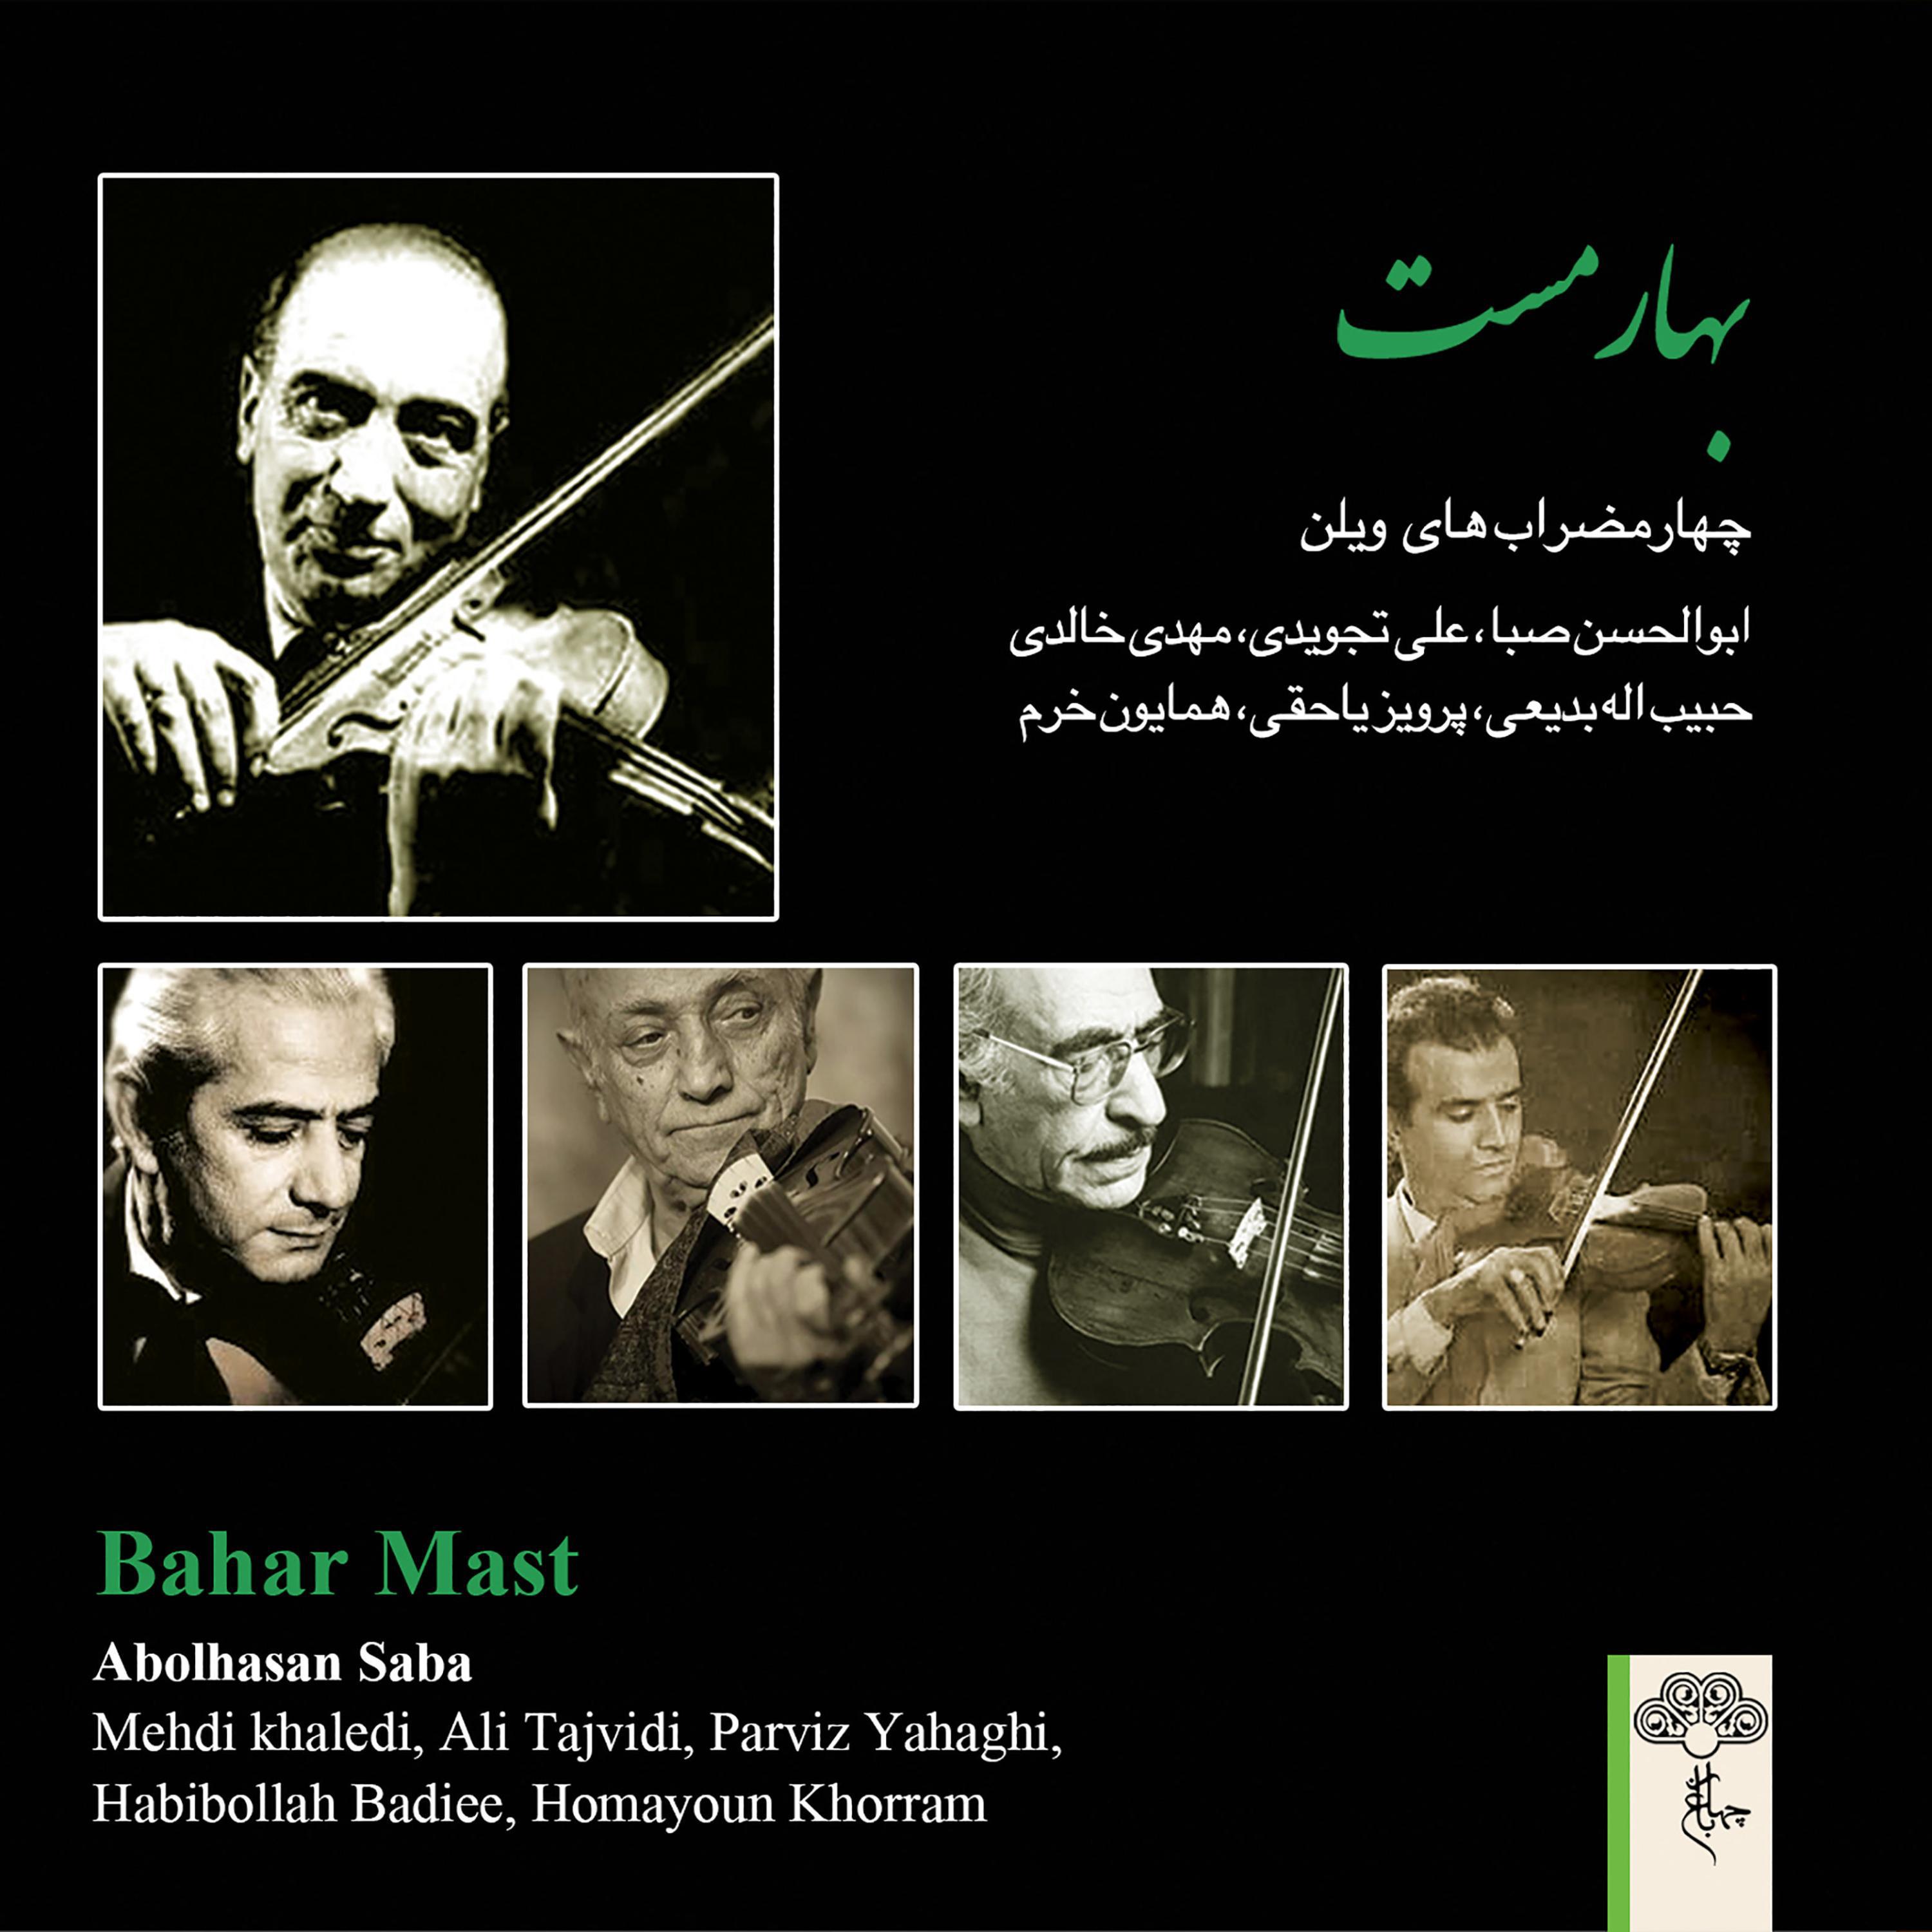 Abolhasan Saba - Chaharmezrab Dashti, Pt. 1 (feat. Abdollah Jahan Panah)